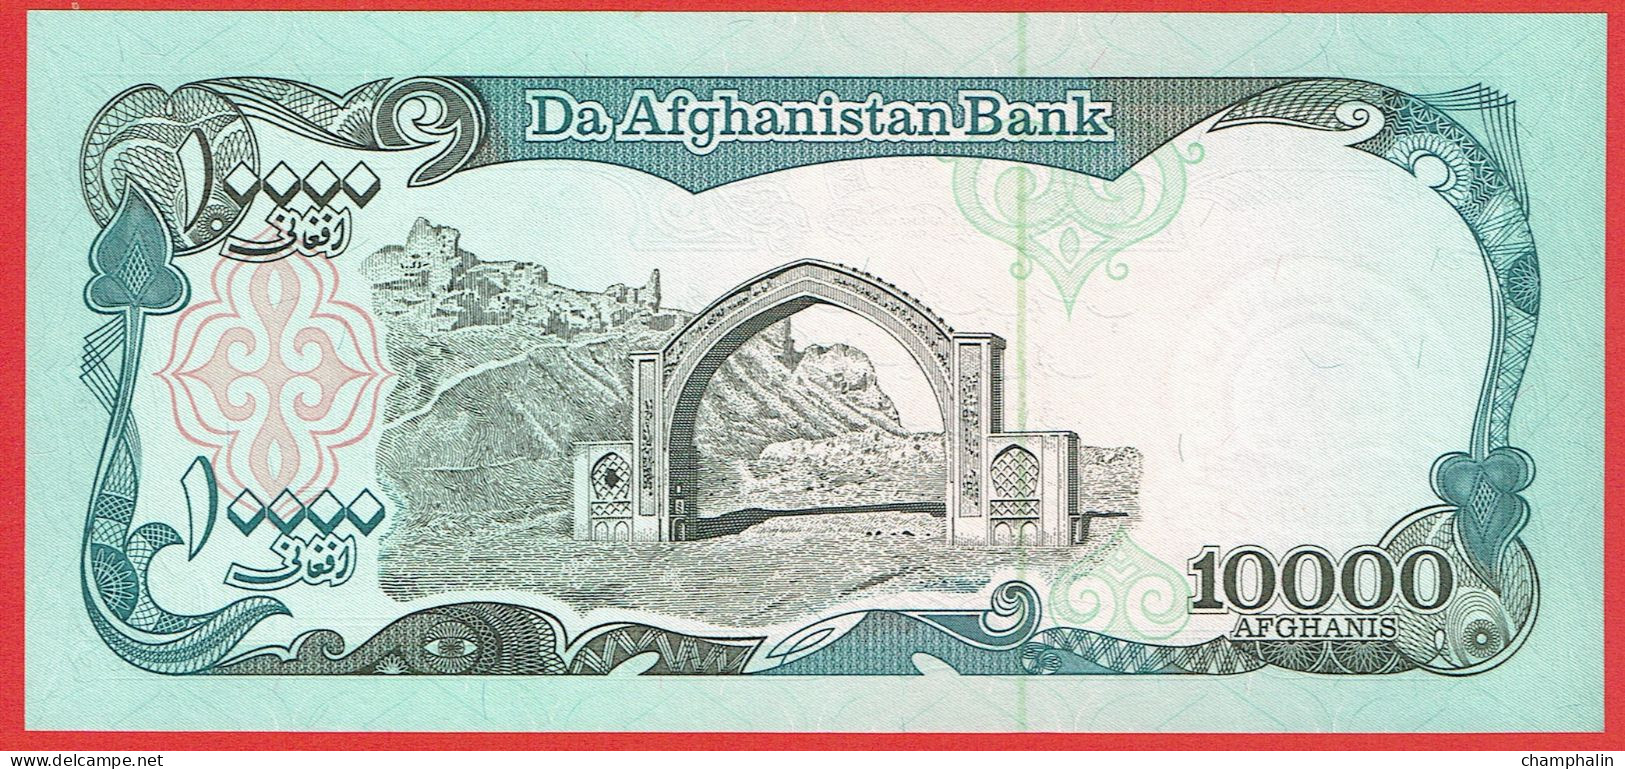 Afghanistan - Billet De 10000 Afghanis - 1993 - P63a - Neuf - Afghanistan